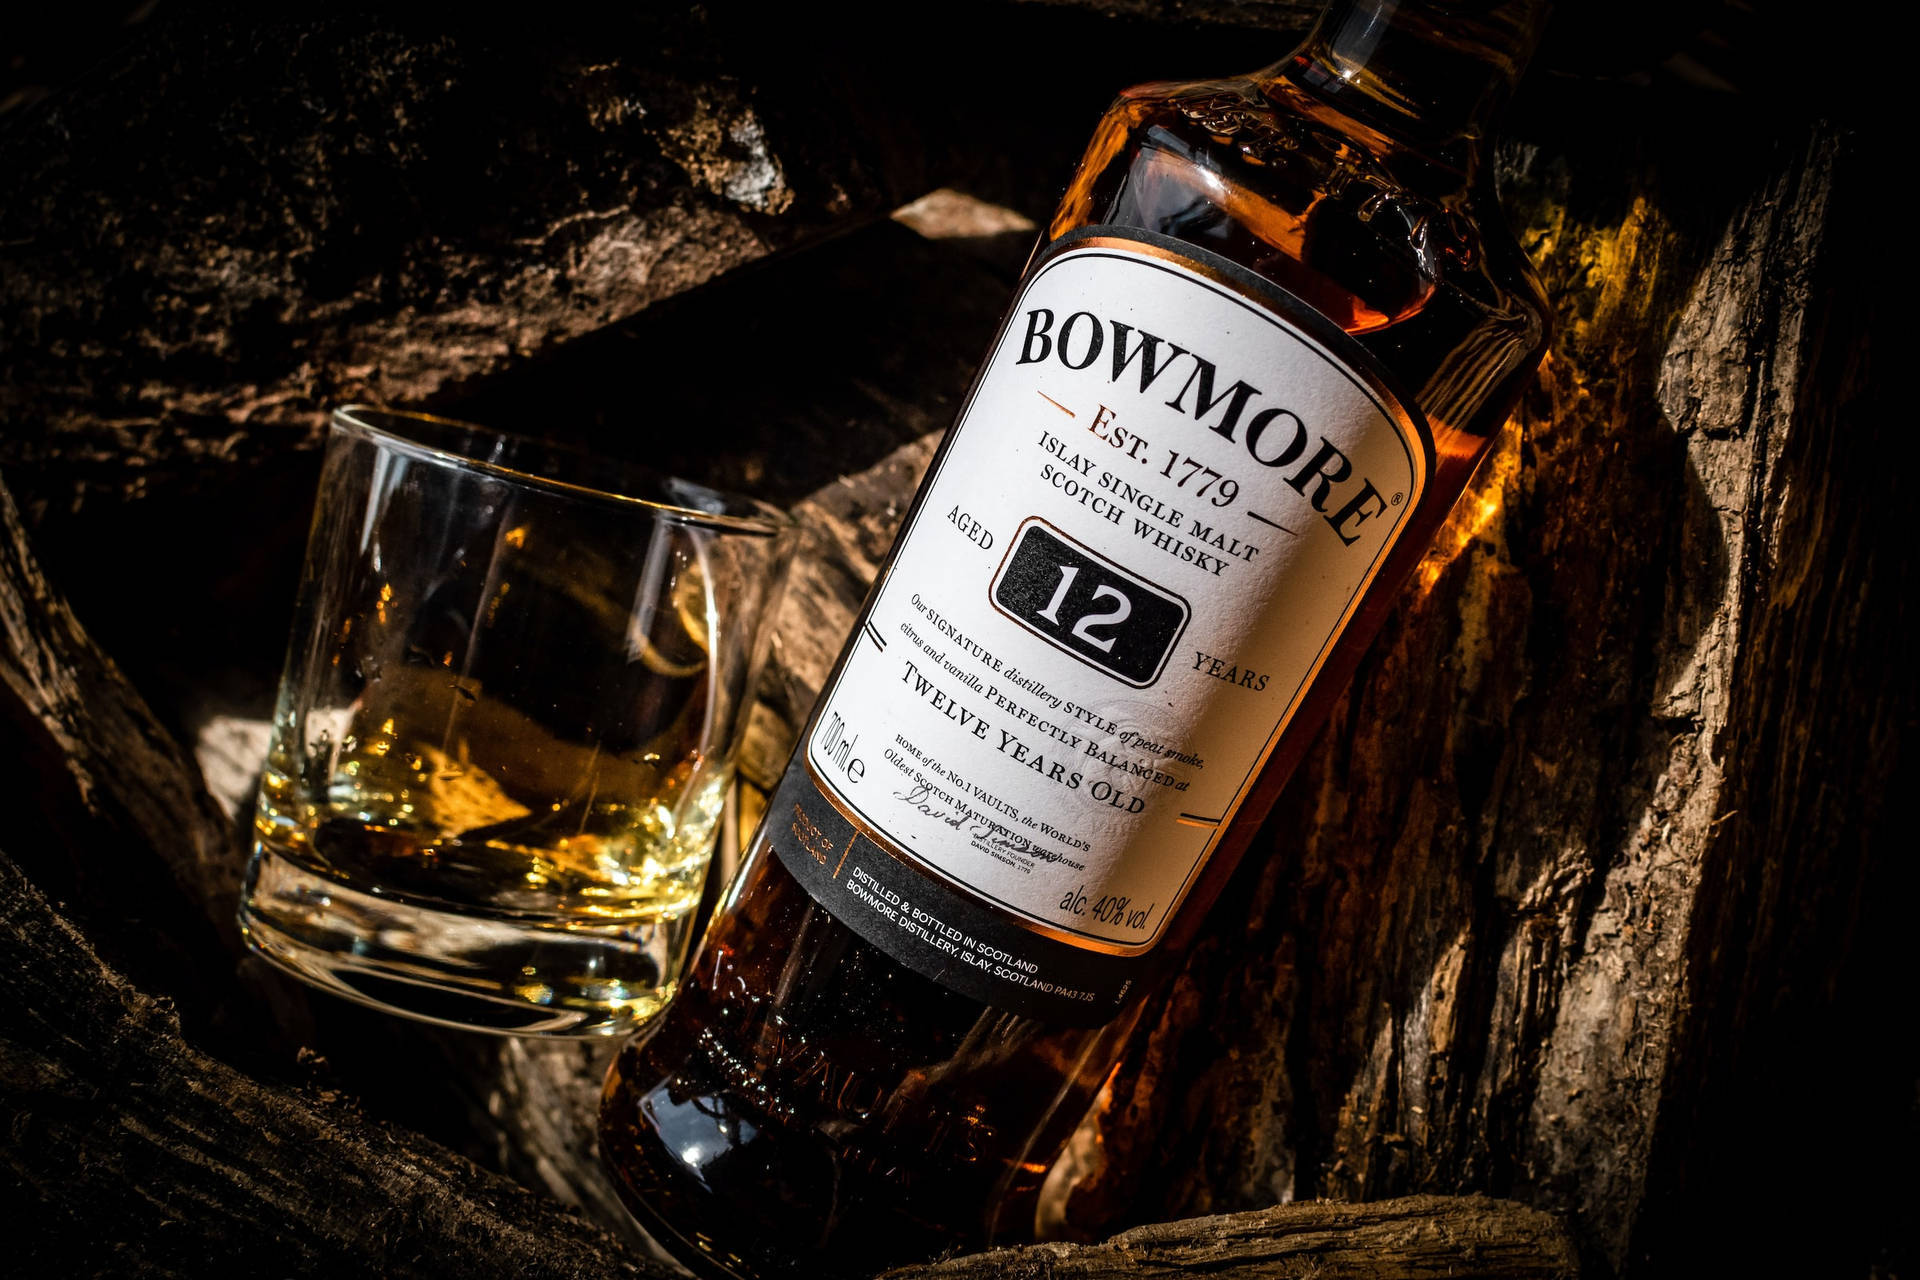 Bowmorewhisky De 12 Años De Envejecimiento Fondo de pantalla